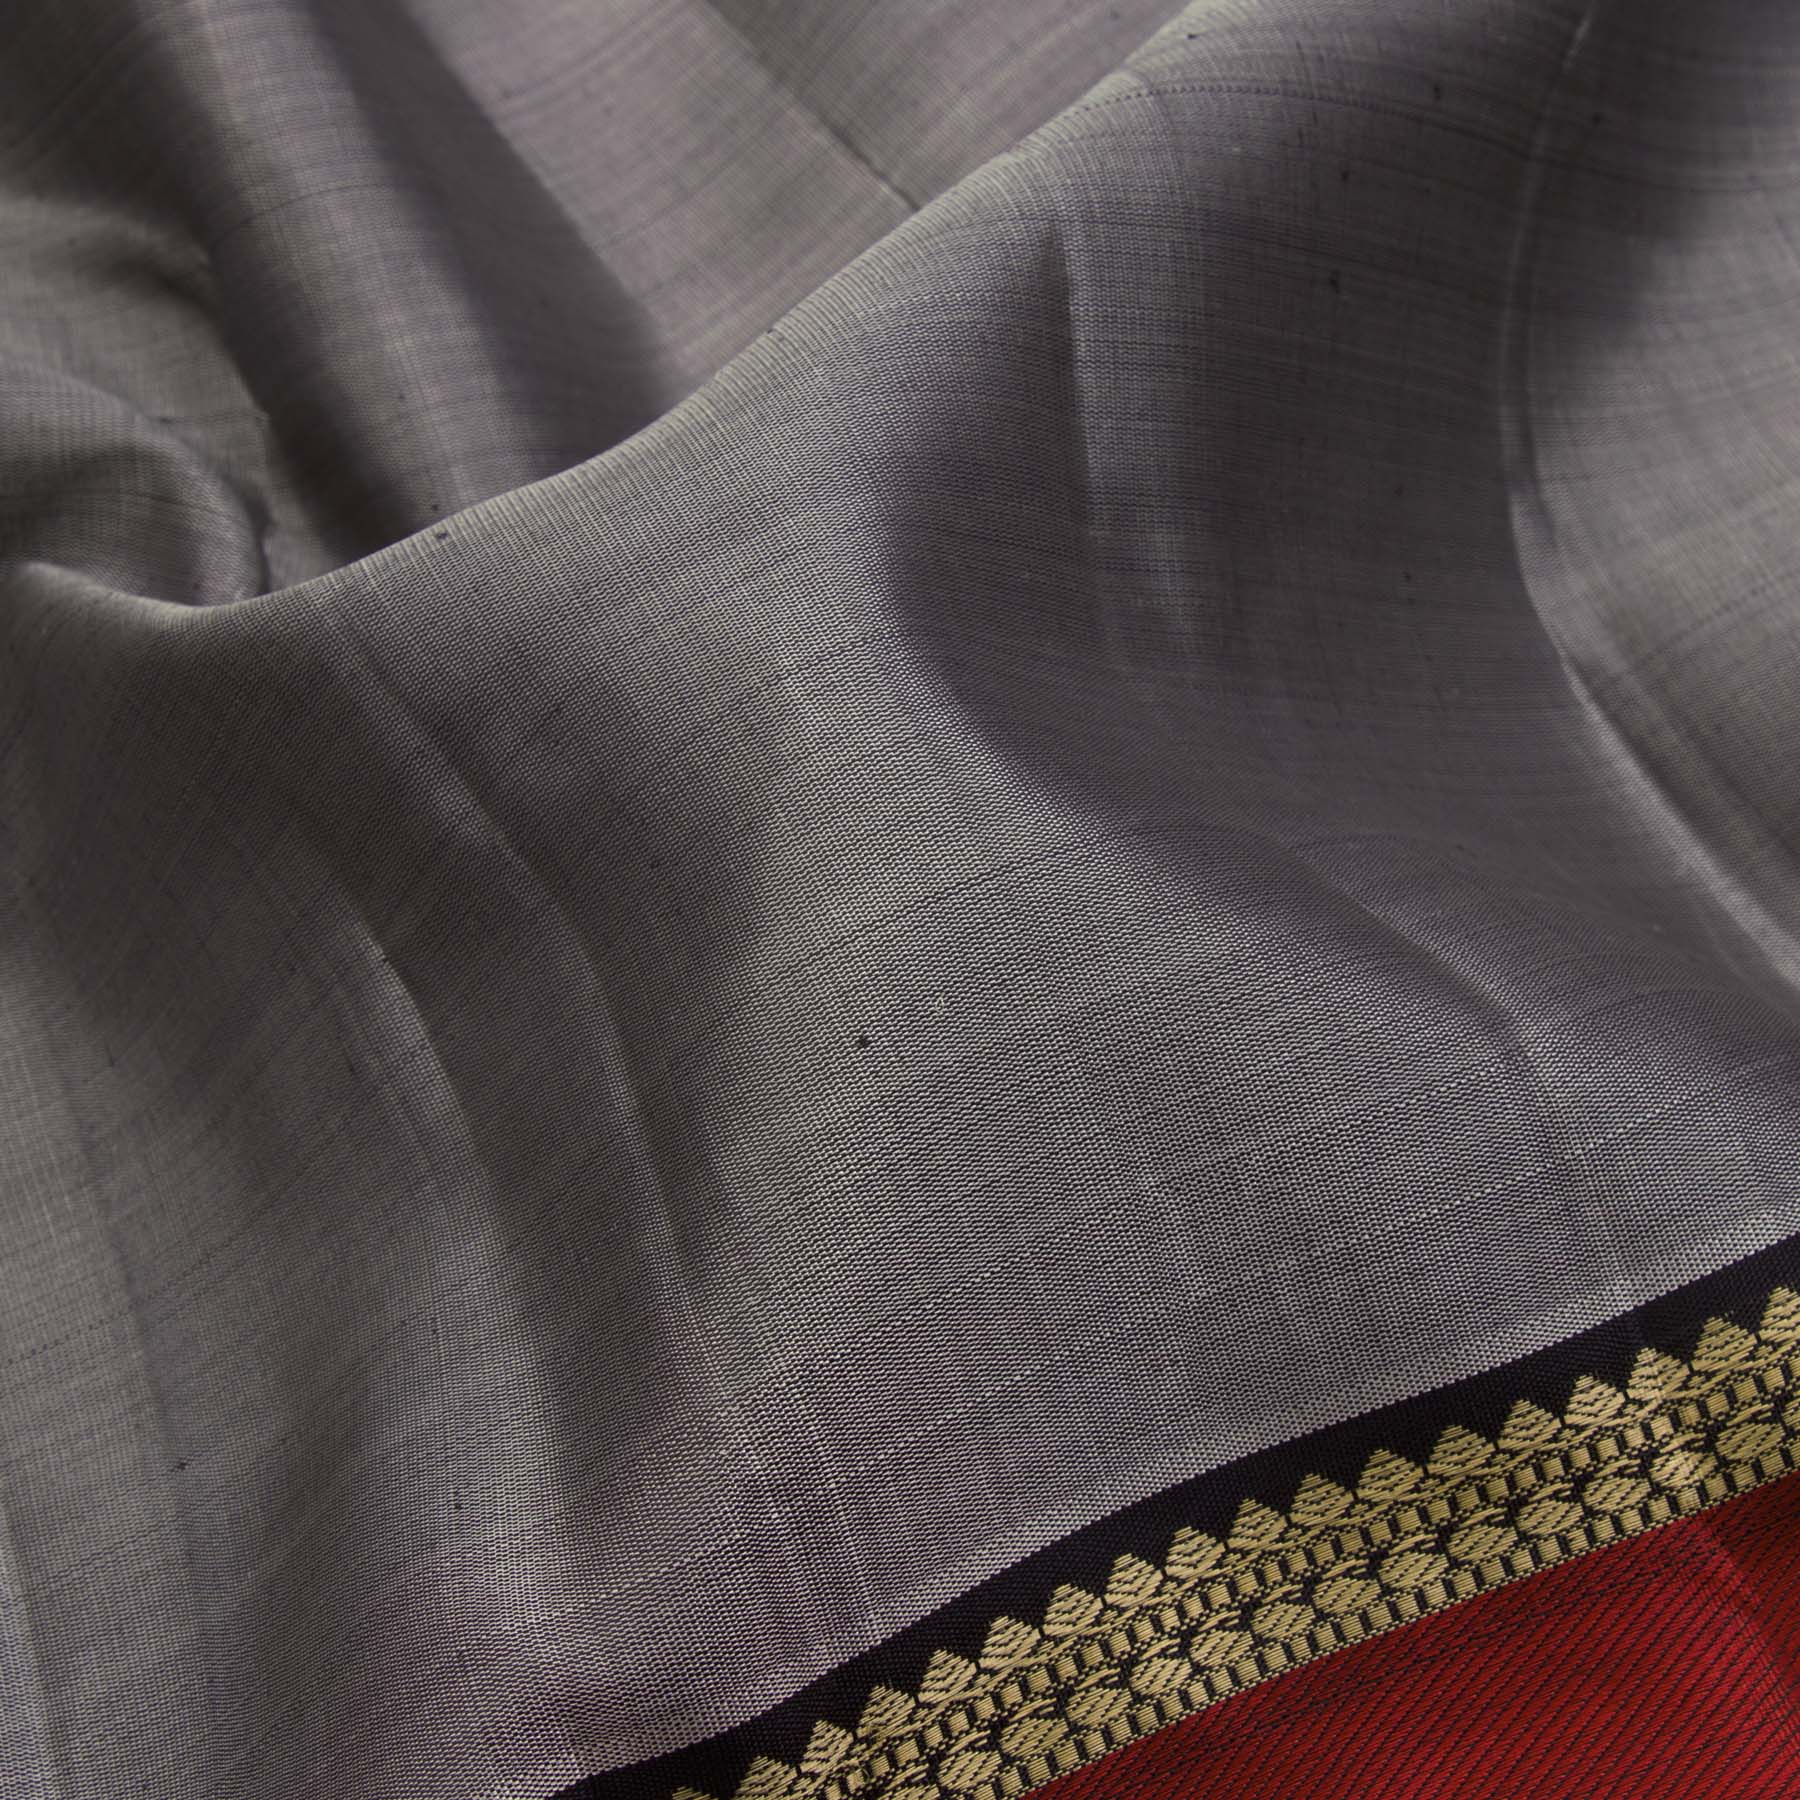 Kanakavalli Kanjivaram Silk Sari 23-599-HS001-04084 - Fabric View